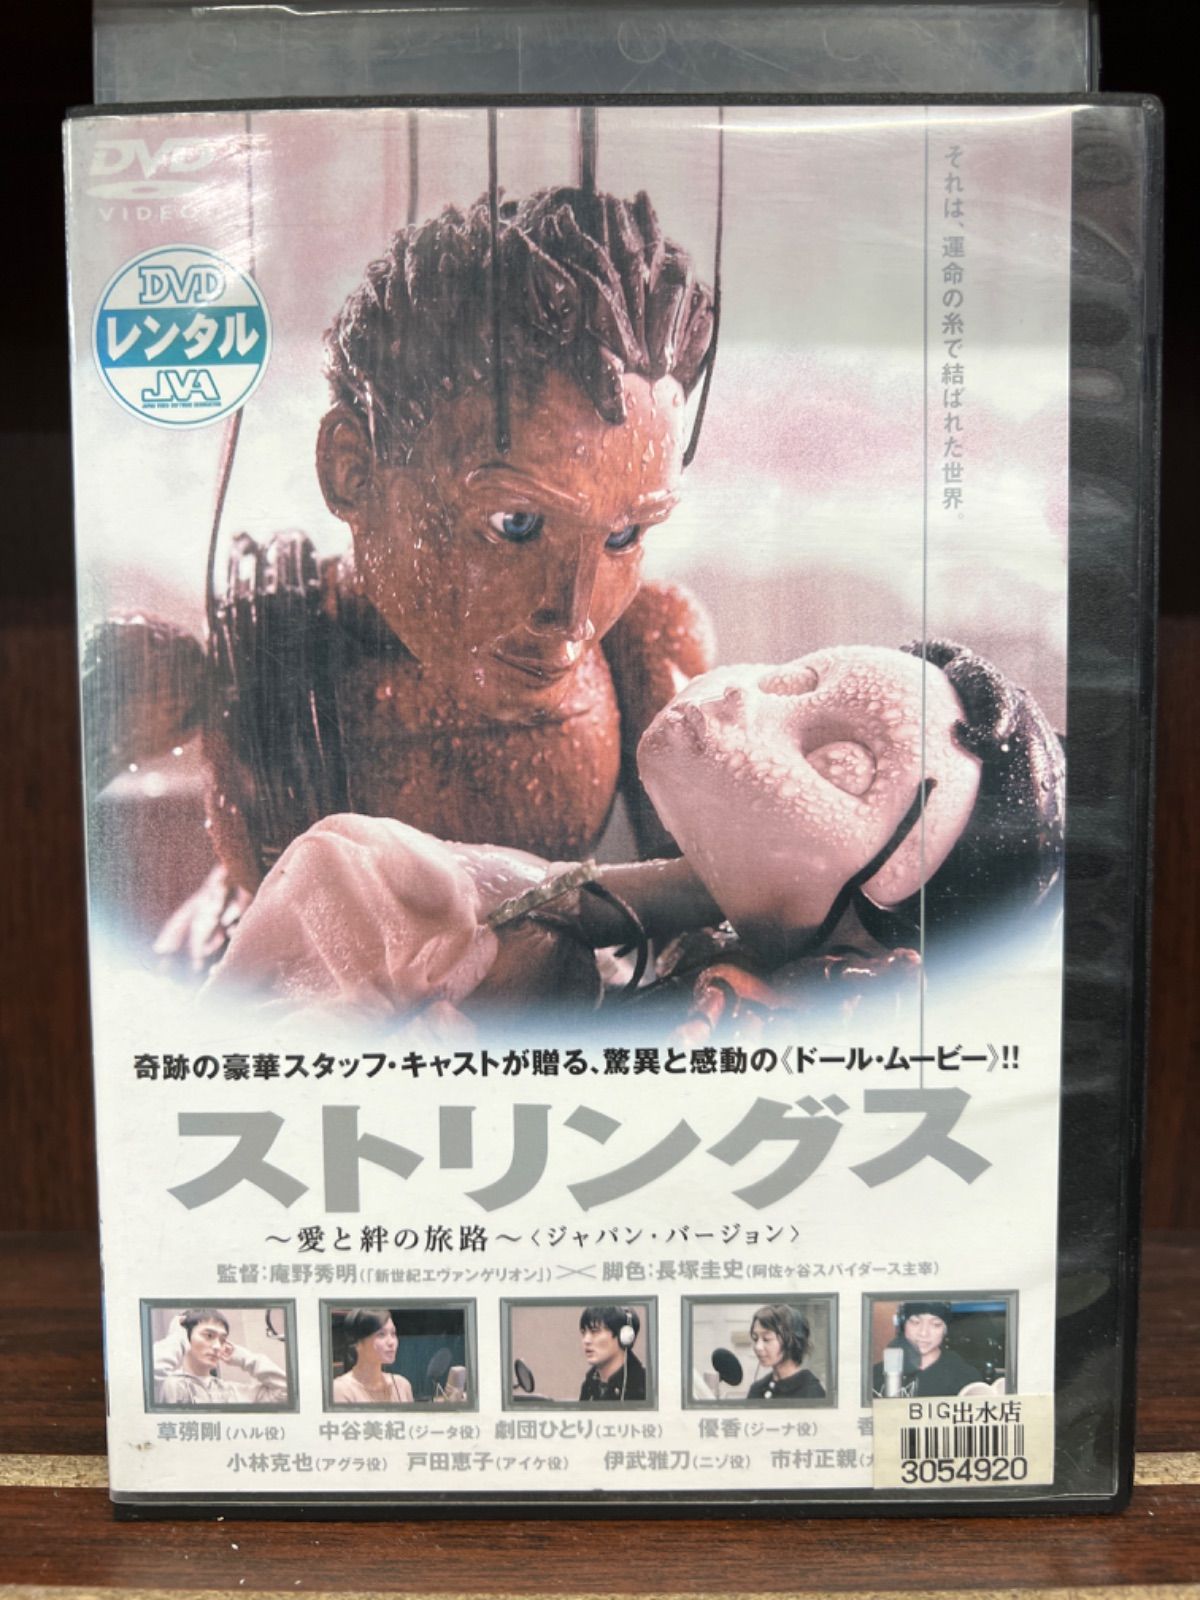 ストリングス~愛と絆の旅路~〈ジャパン・バージョン〉 [DVD]